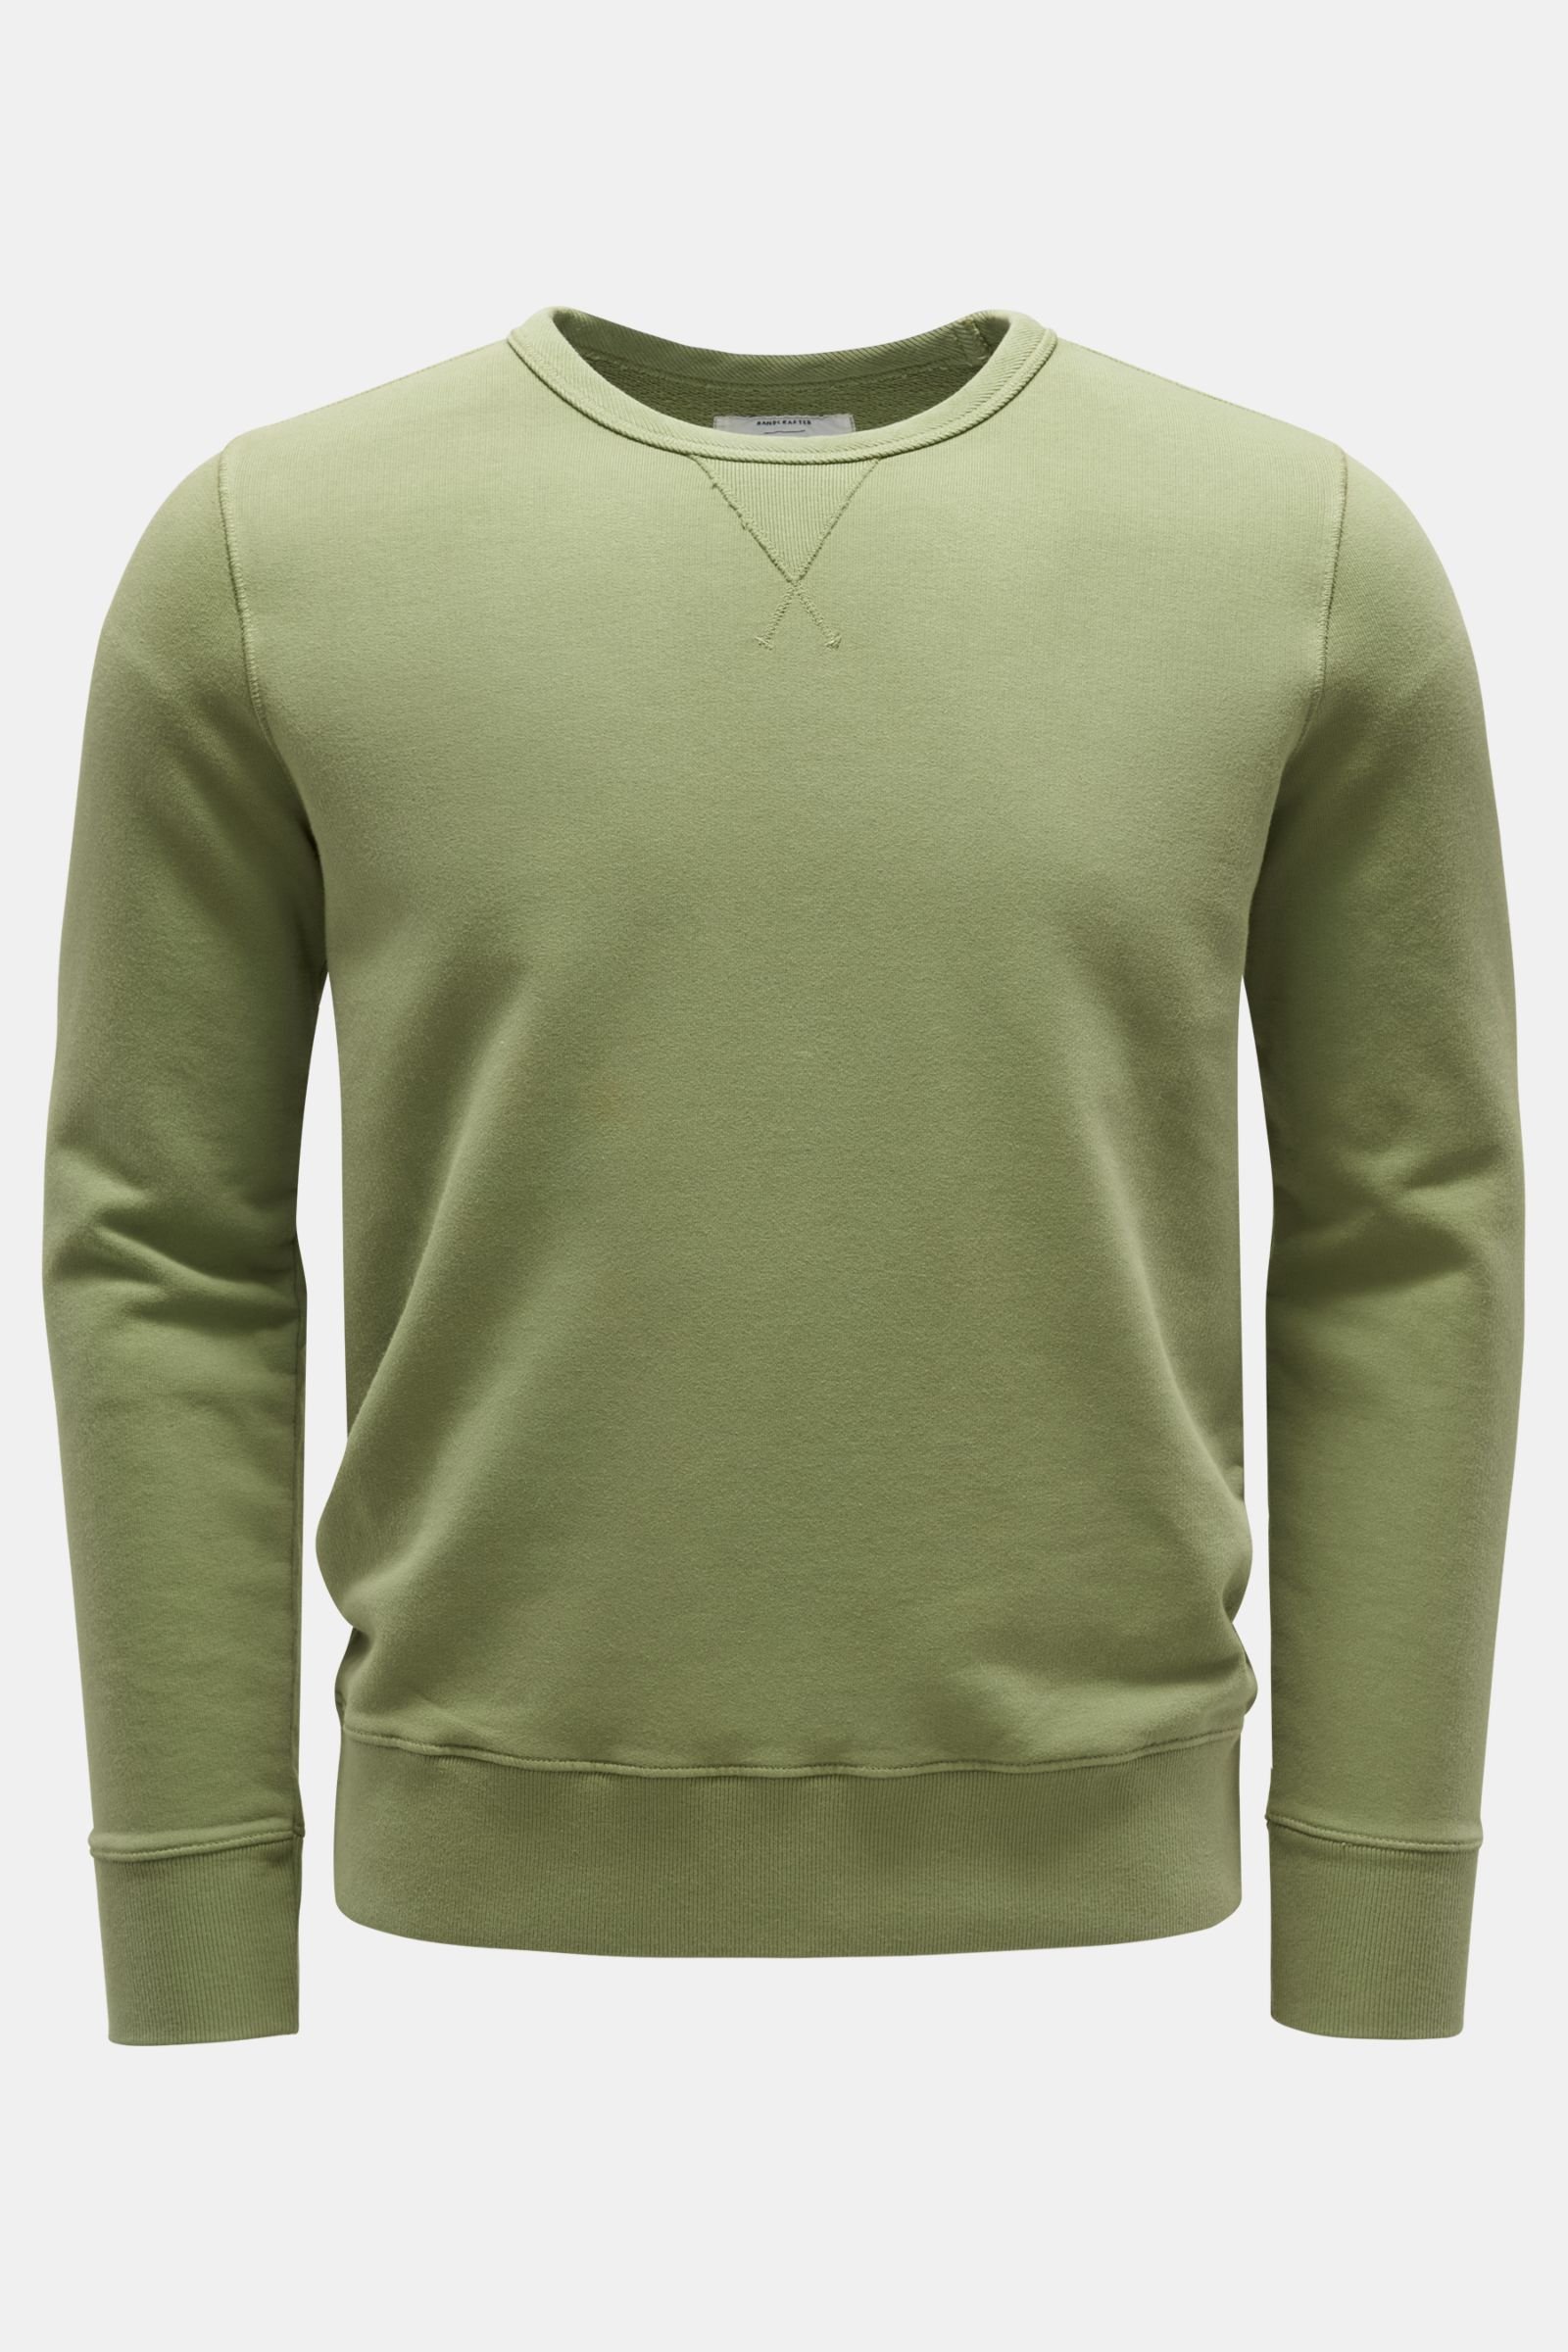 Rundhals-Sweatshirt hellgrün